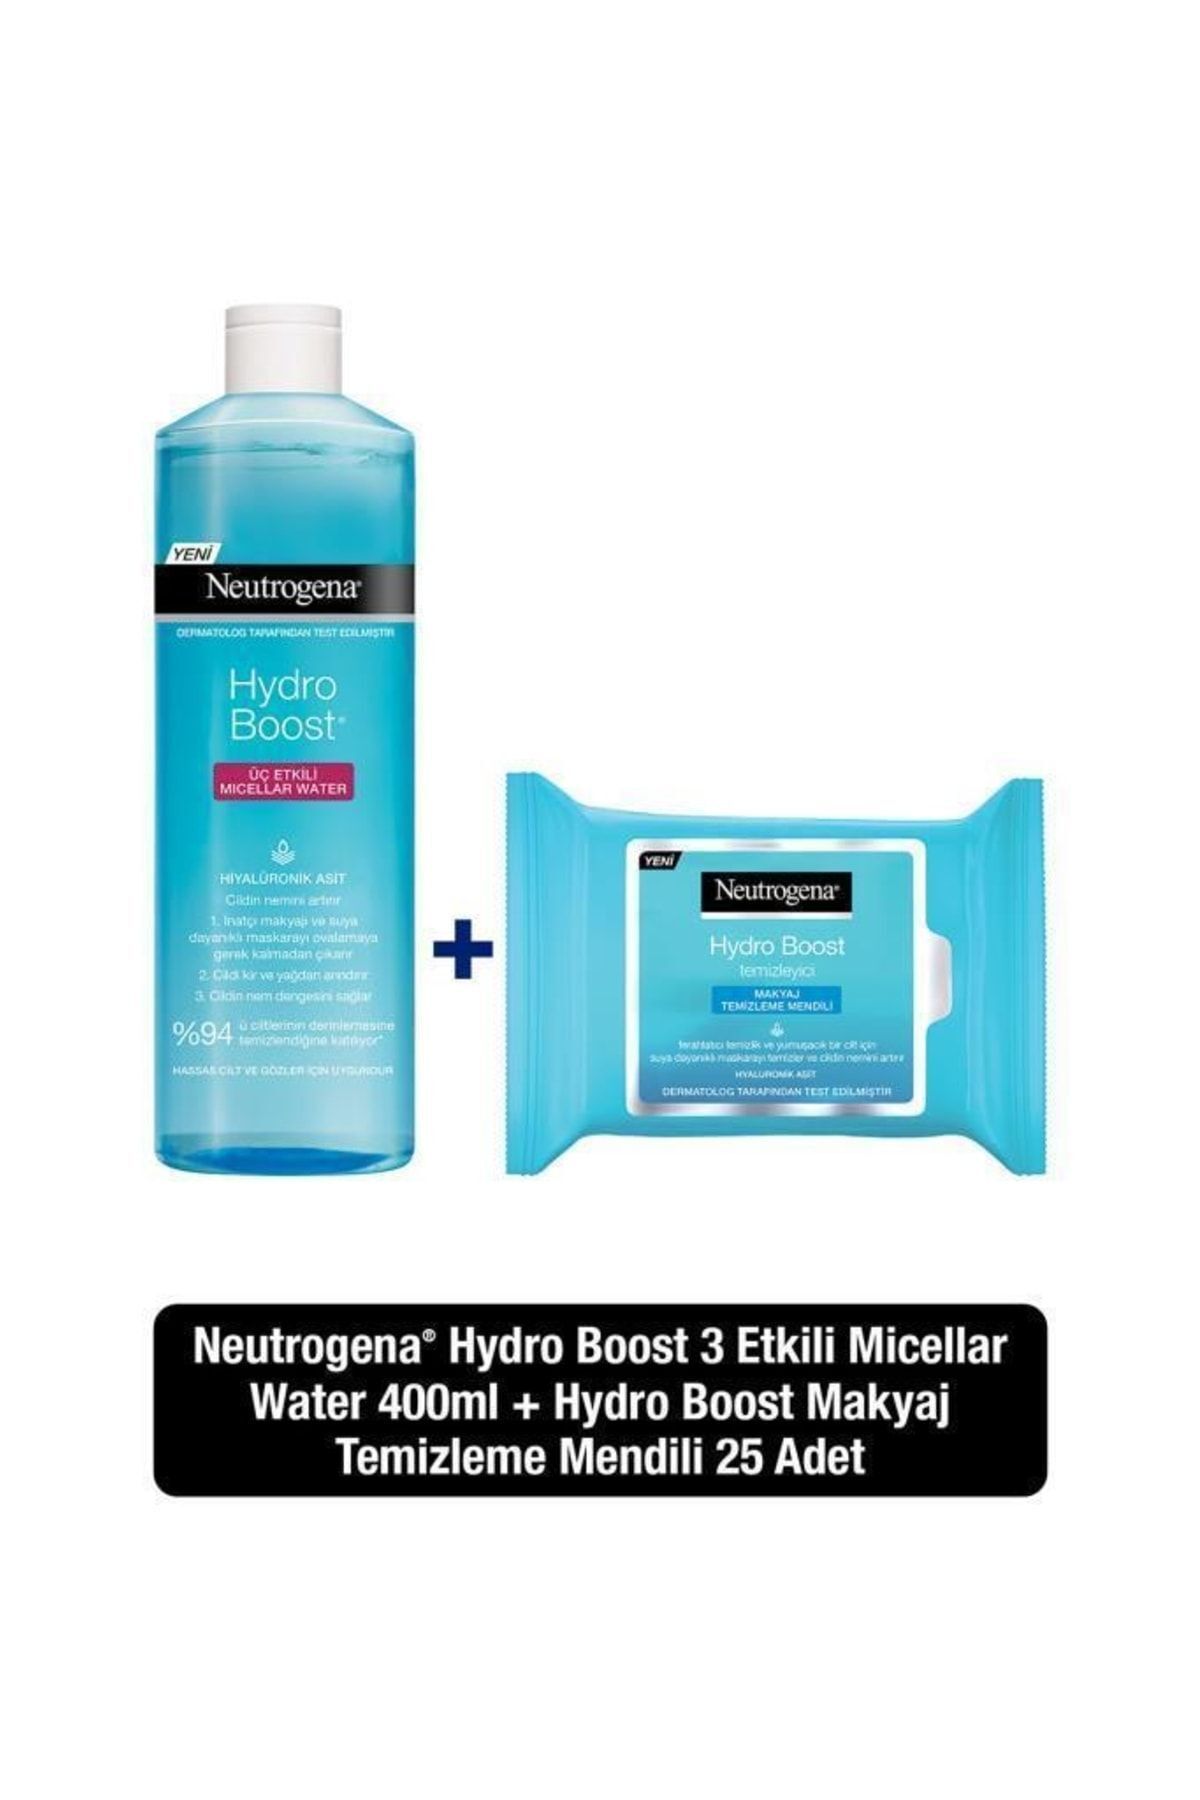 Neutrogena Hydro Boost Micellar Water 400 ml Hydro Boost Temizleme Mendili